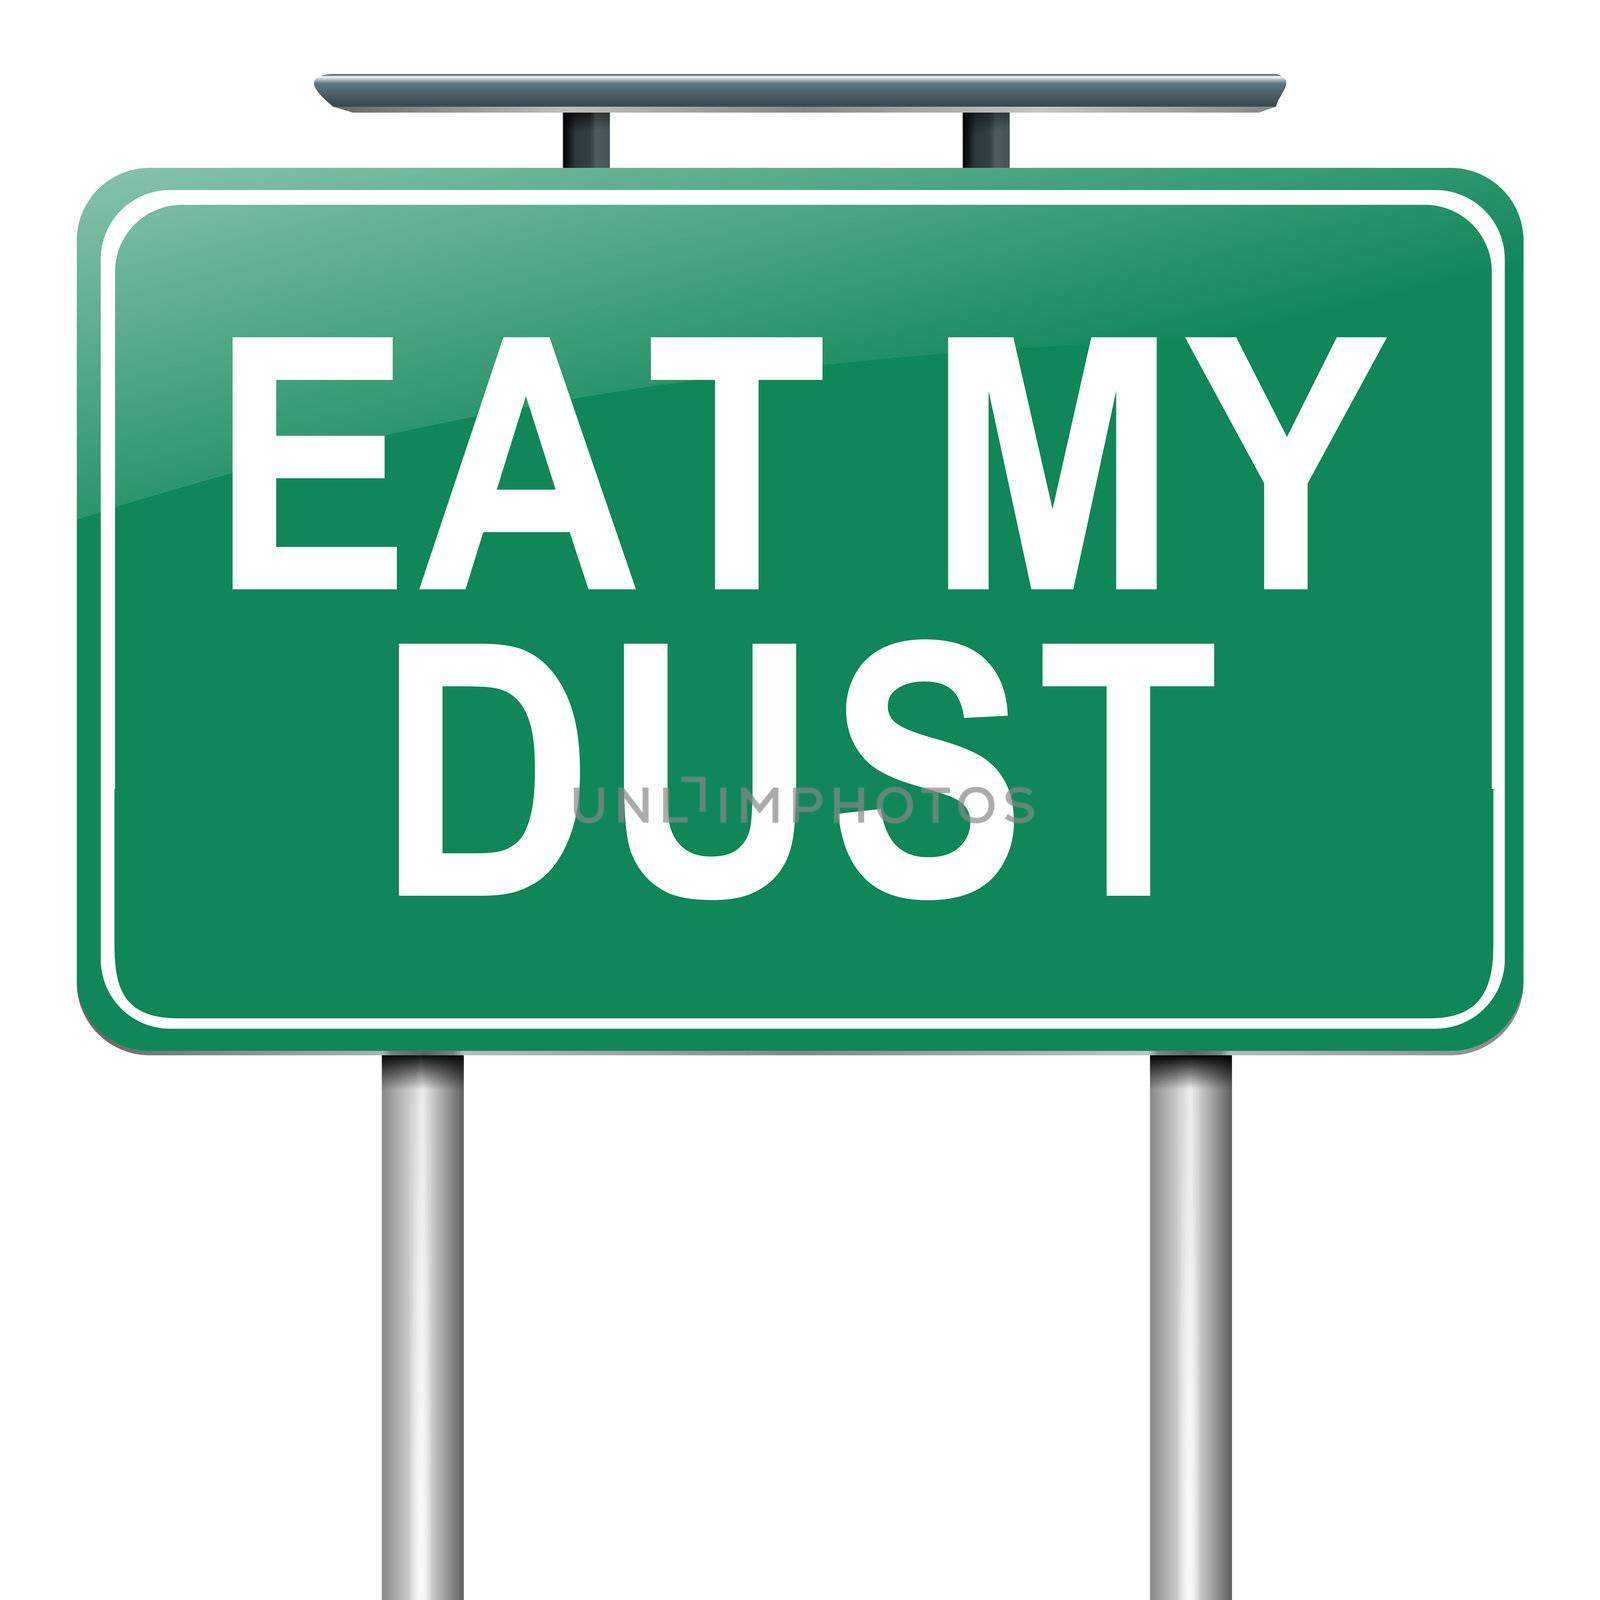 Eat my dust. by 72soul